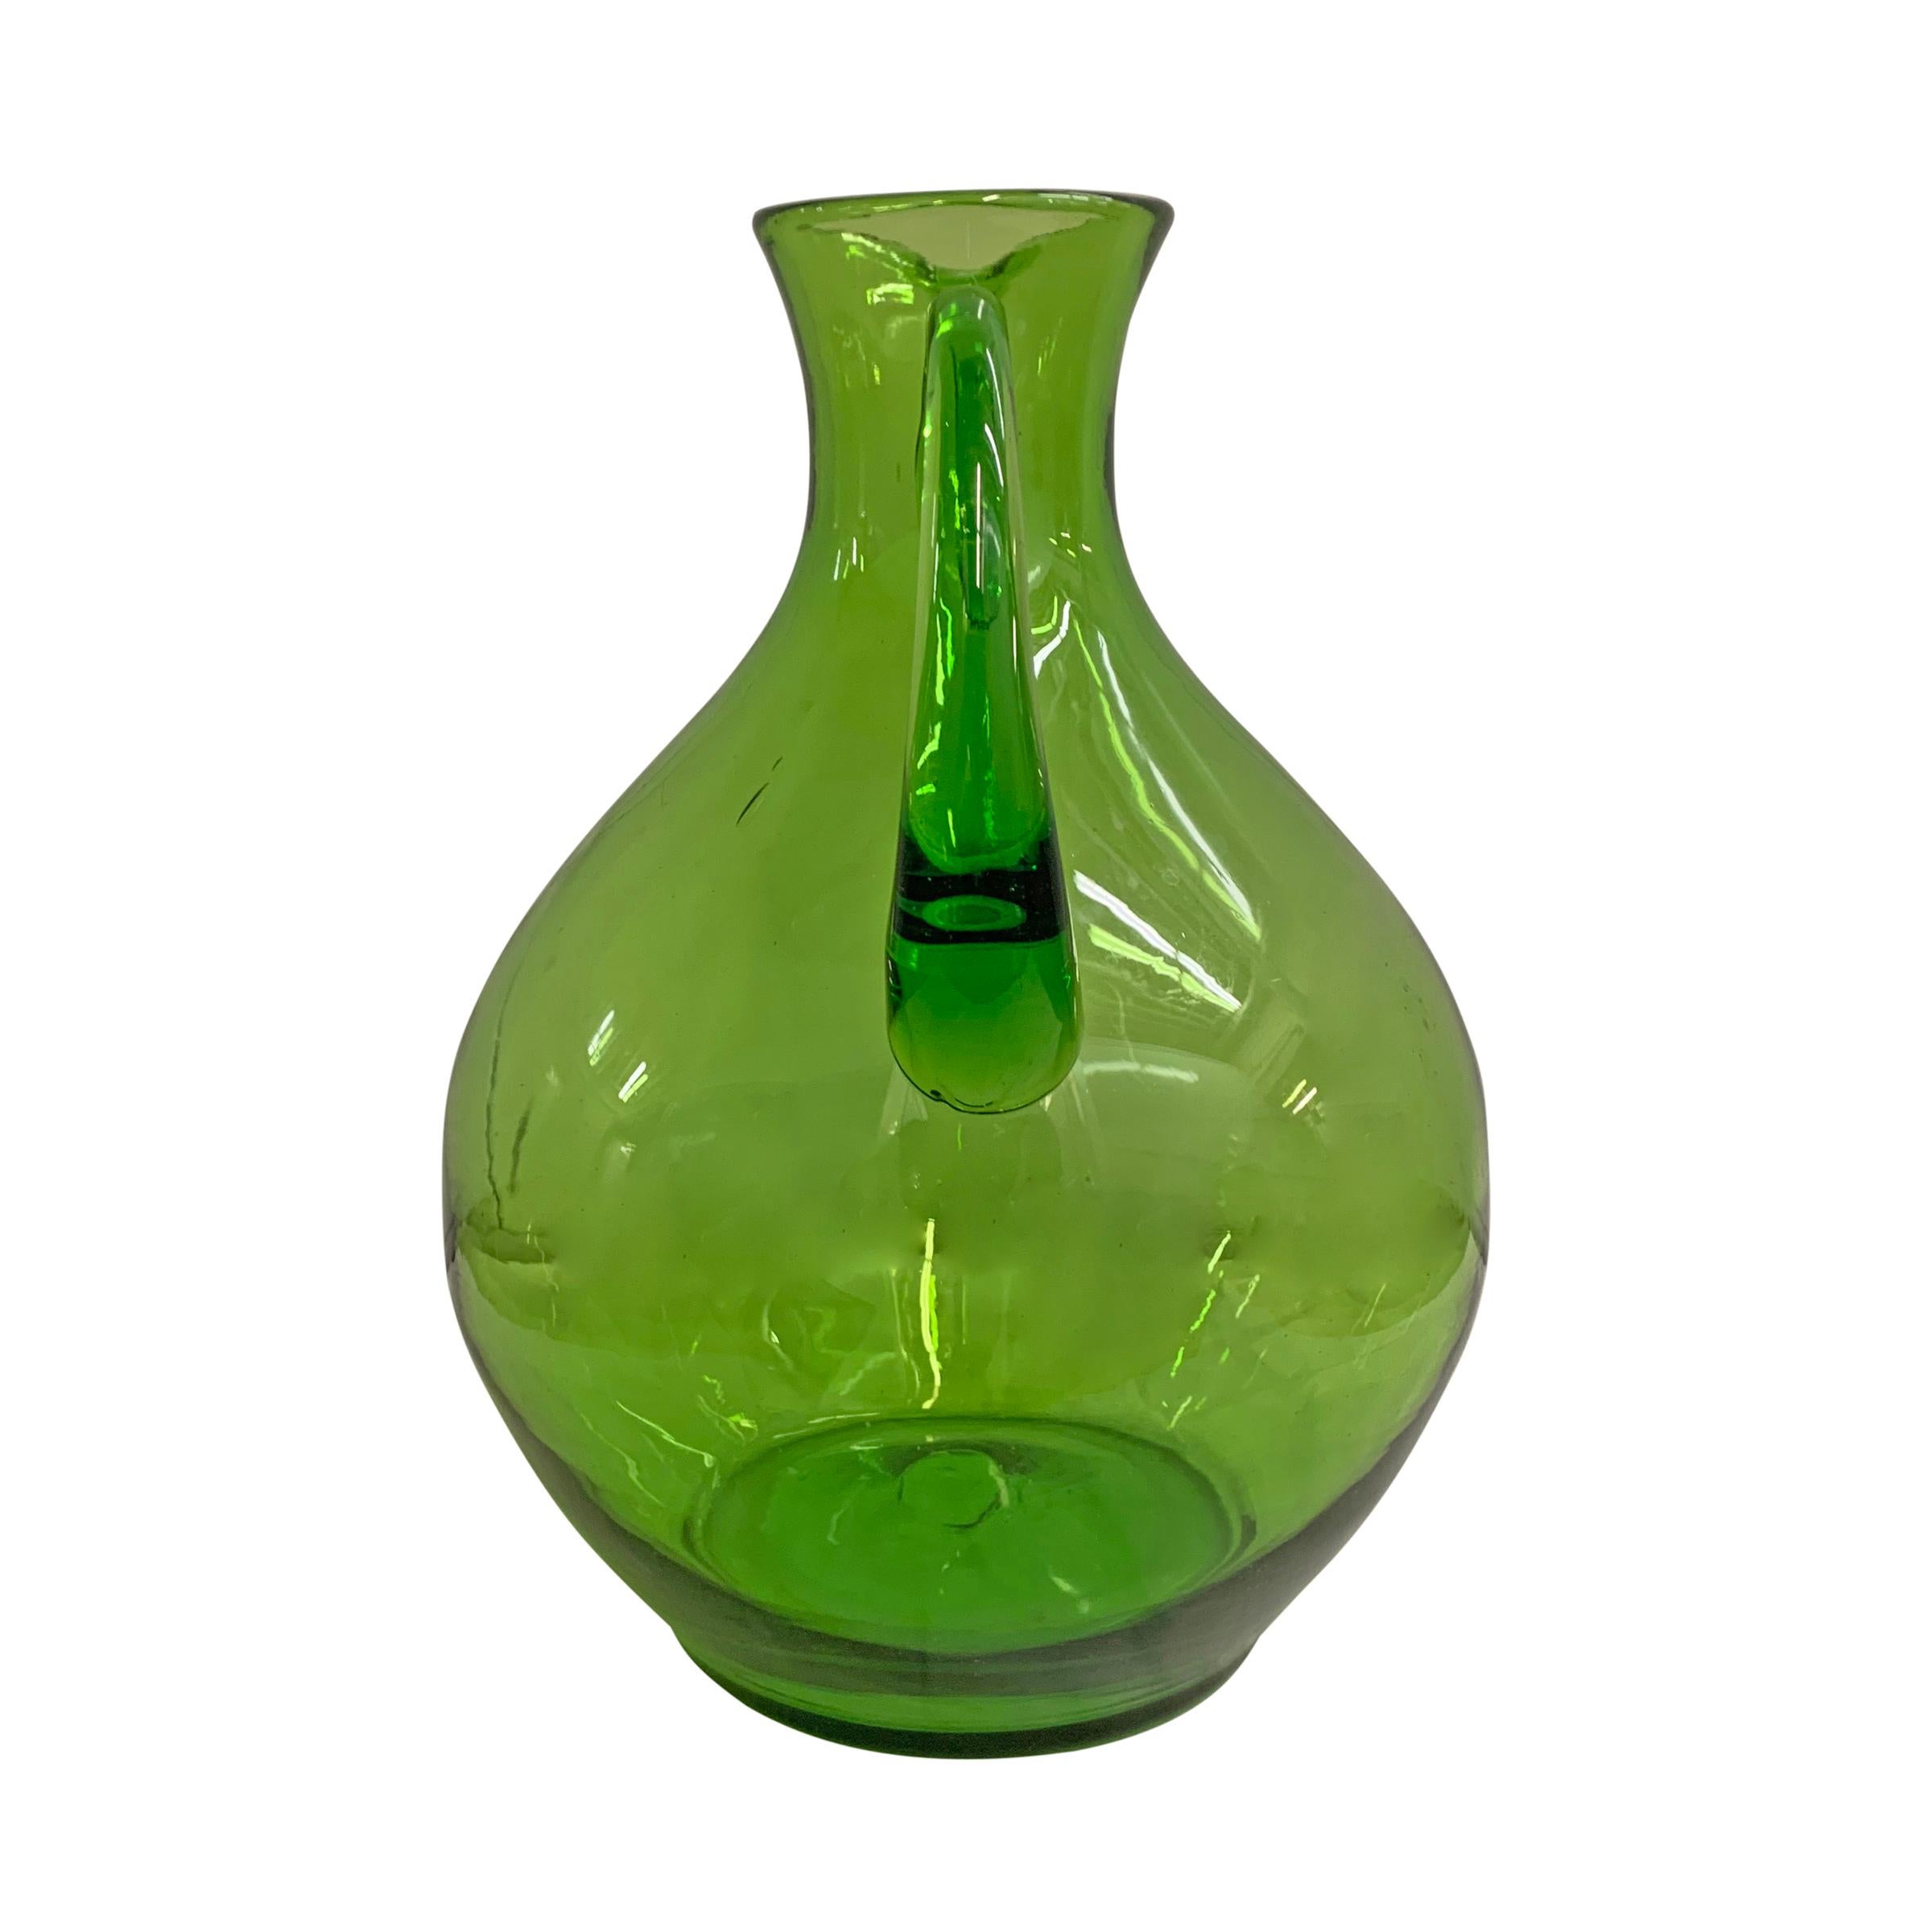 green glass jug